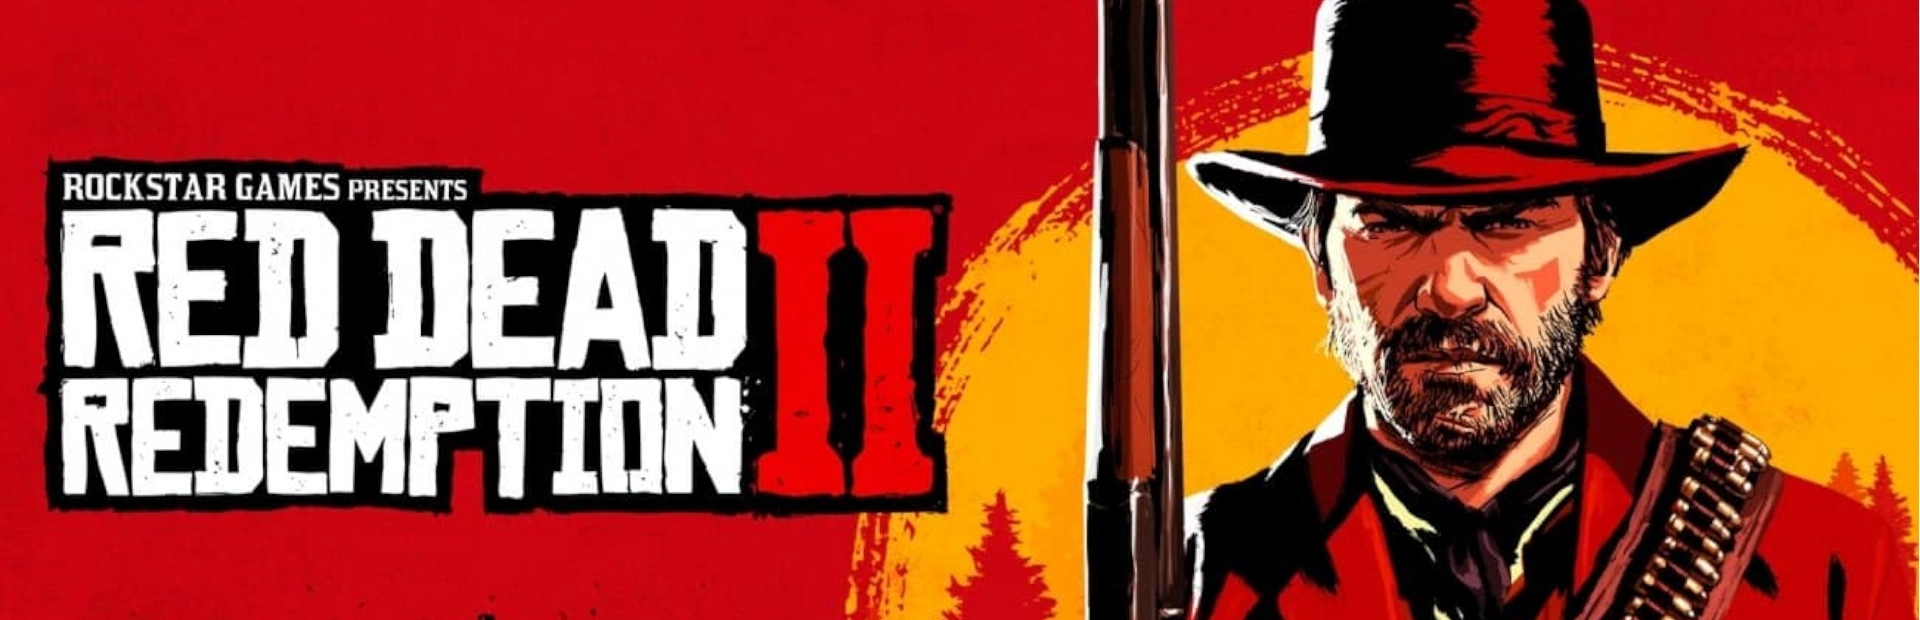  دانلود بازی Red Dead Redemption 2 برای PC  | گیمباتو